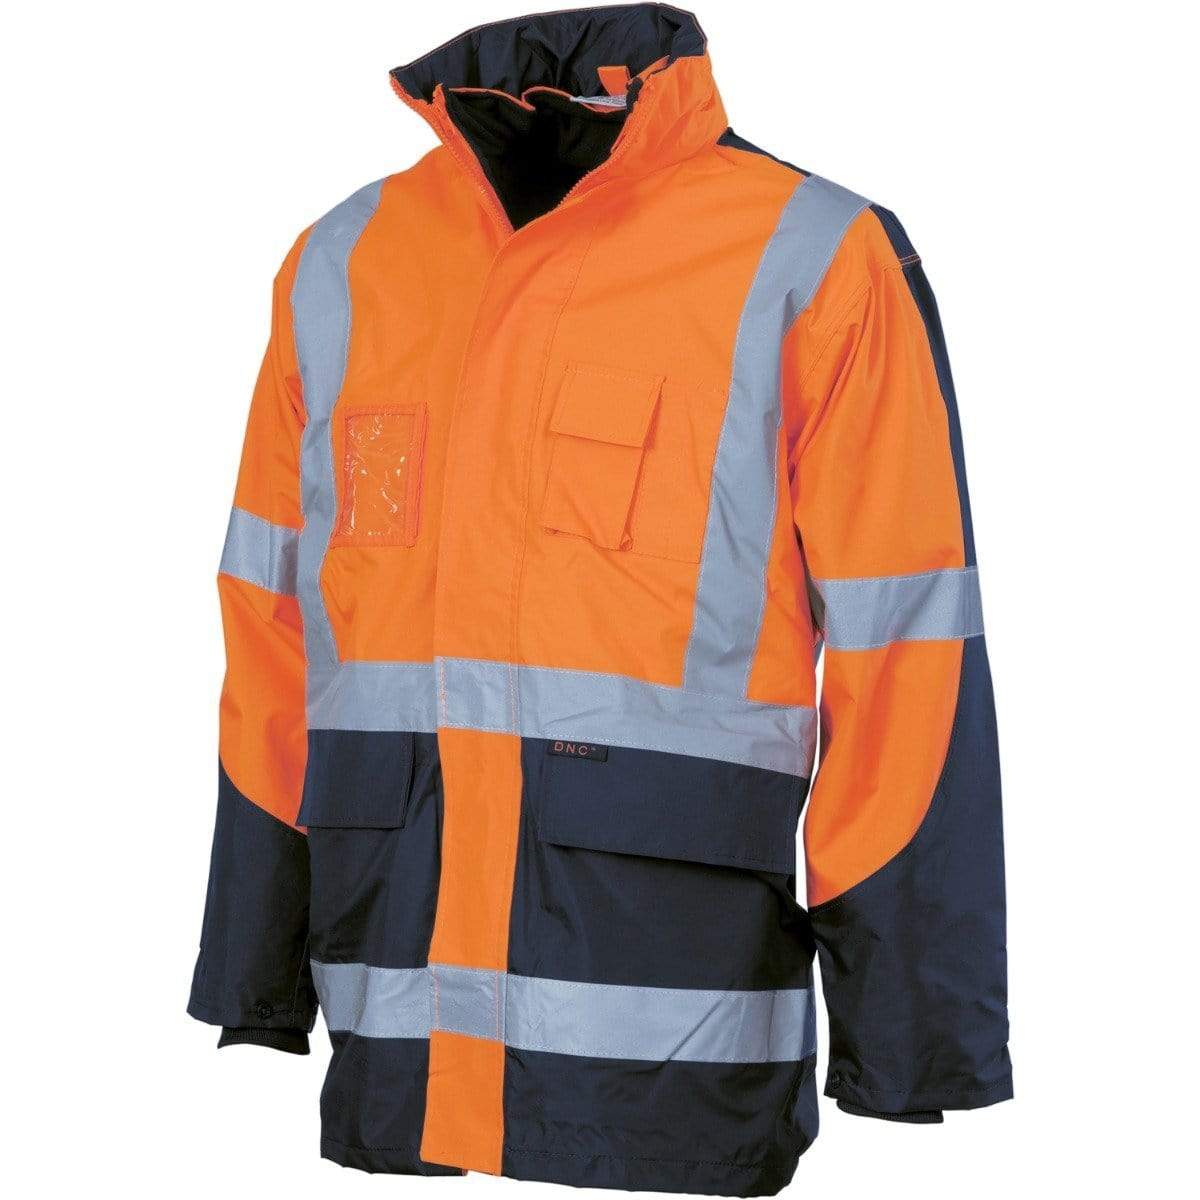 DNC Workwear Work Wear Orange/Navy / S DNC WORKWEAR Hi-Vis Cross Back 2 Tone D/N 6-in-1 Contrast Jacket 3998